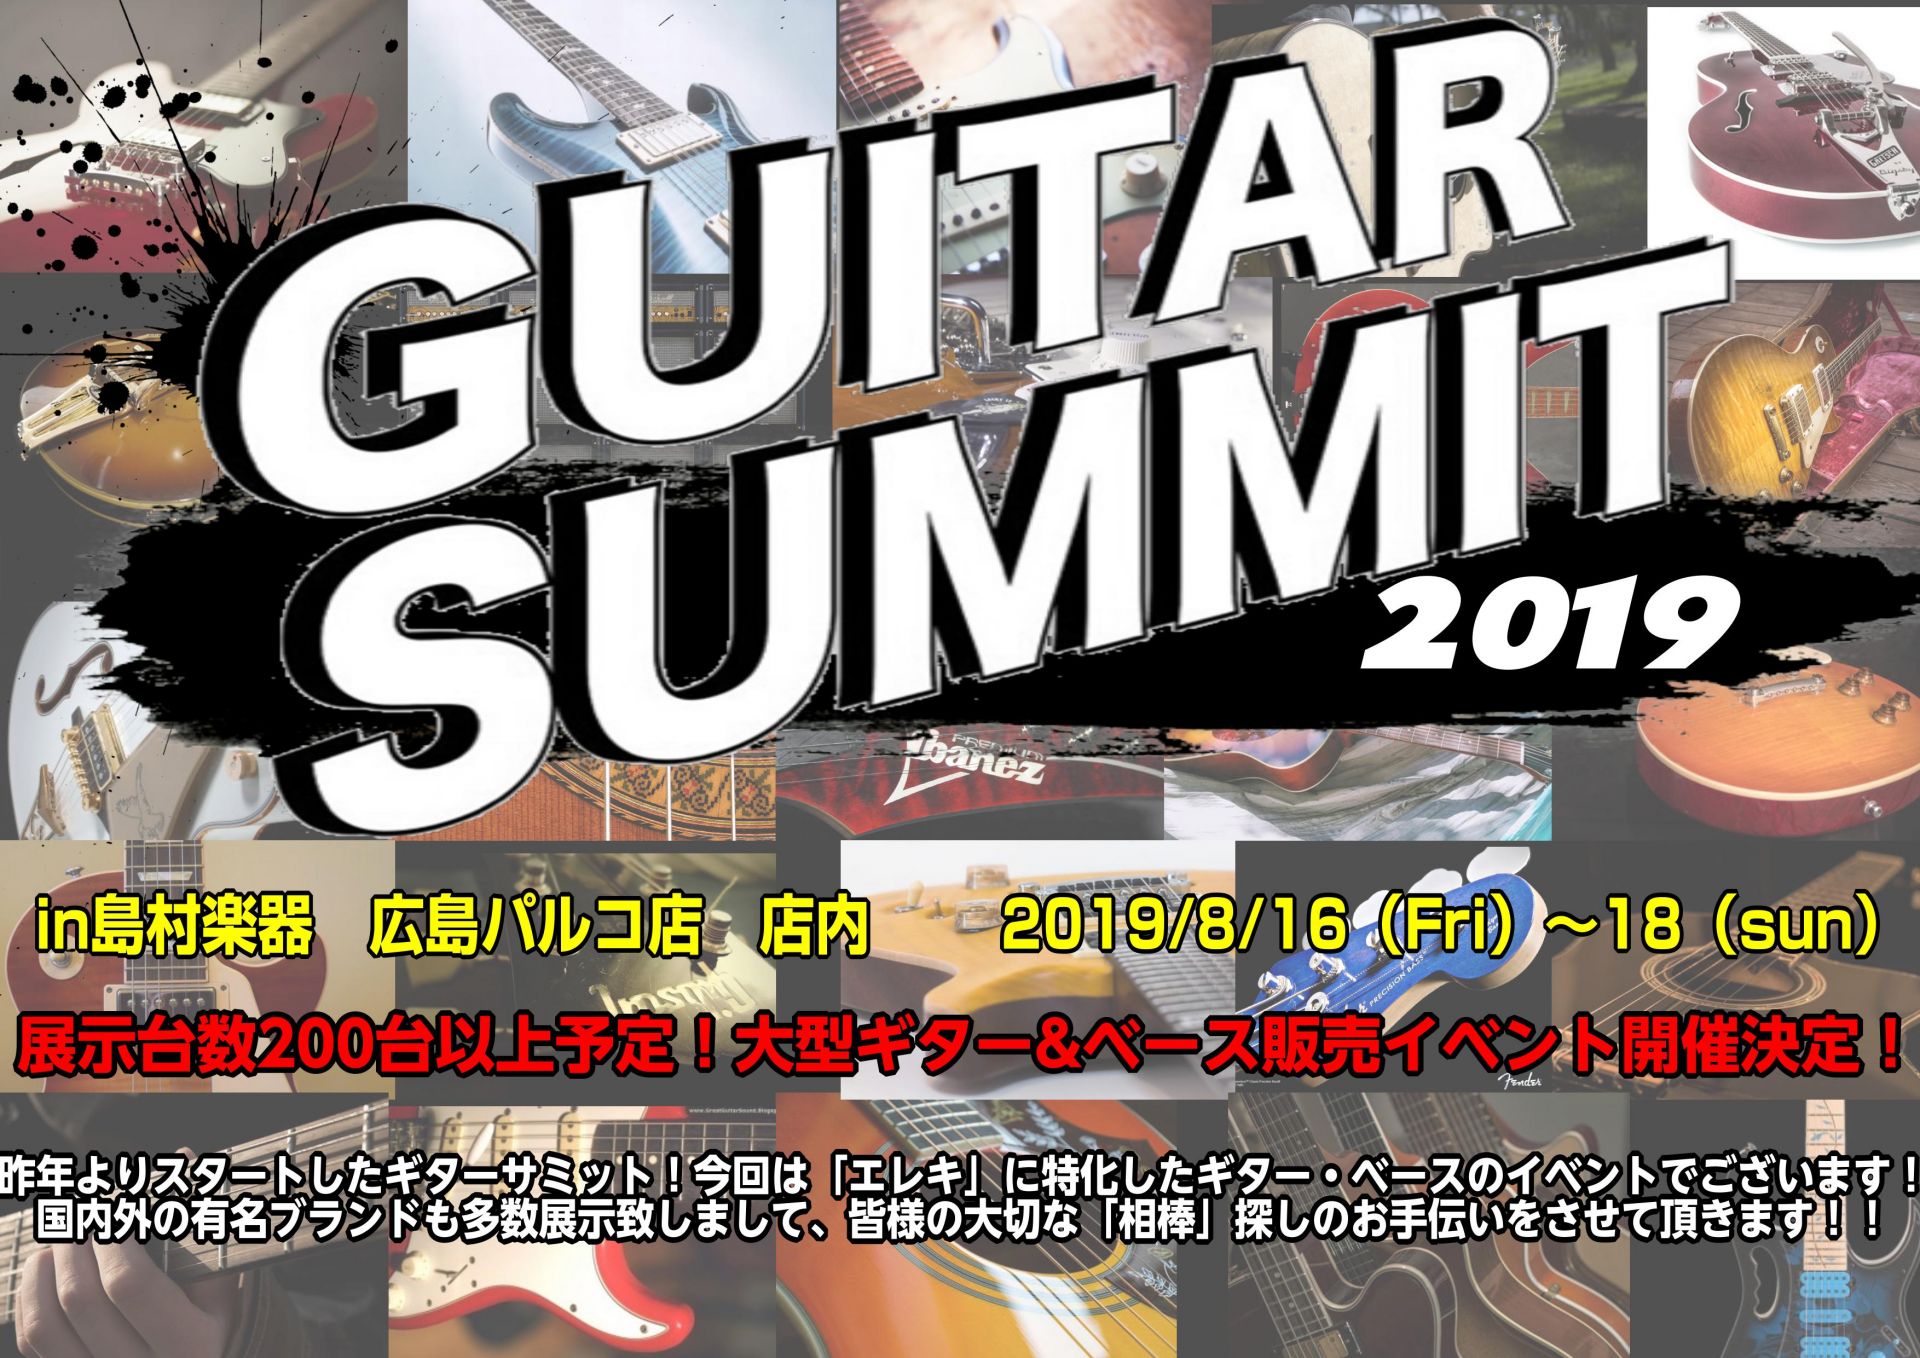 *ギターサミット…！今回はエレキギター・エレキベースに特化して開催致します！ [!!ギターサミット第三弾！!!!] 「中四国ギターサミットforエレクトリック」が2019年8月16日(金)から8月18日(日)の3日間、]]広島パルコ店で開催されます！！ 中四国エリアの皆様！ぜひご来店くださいませ！  […]